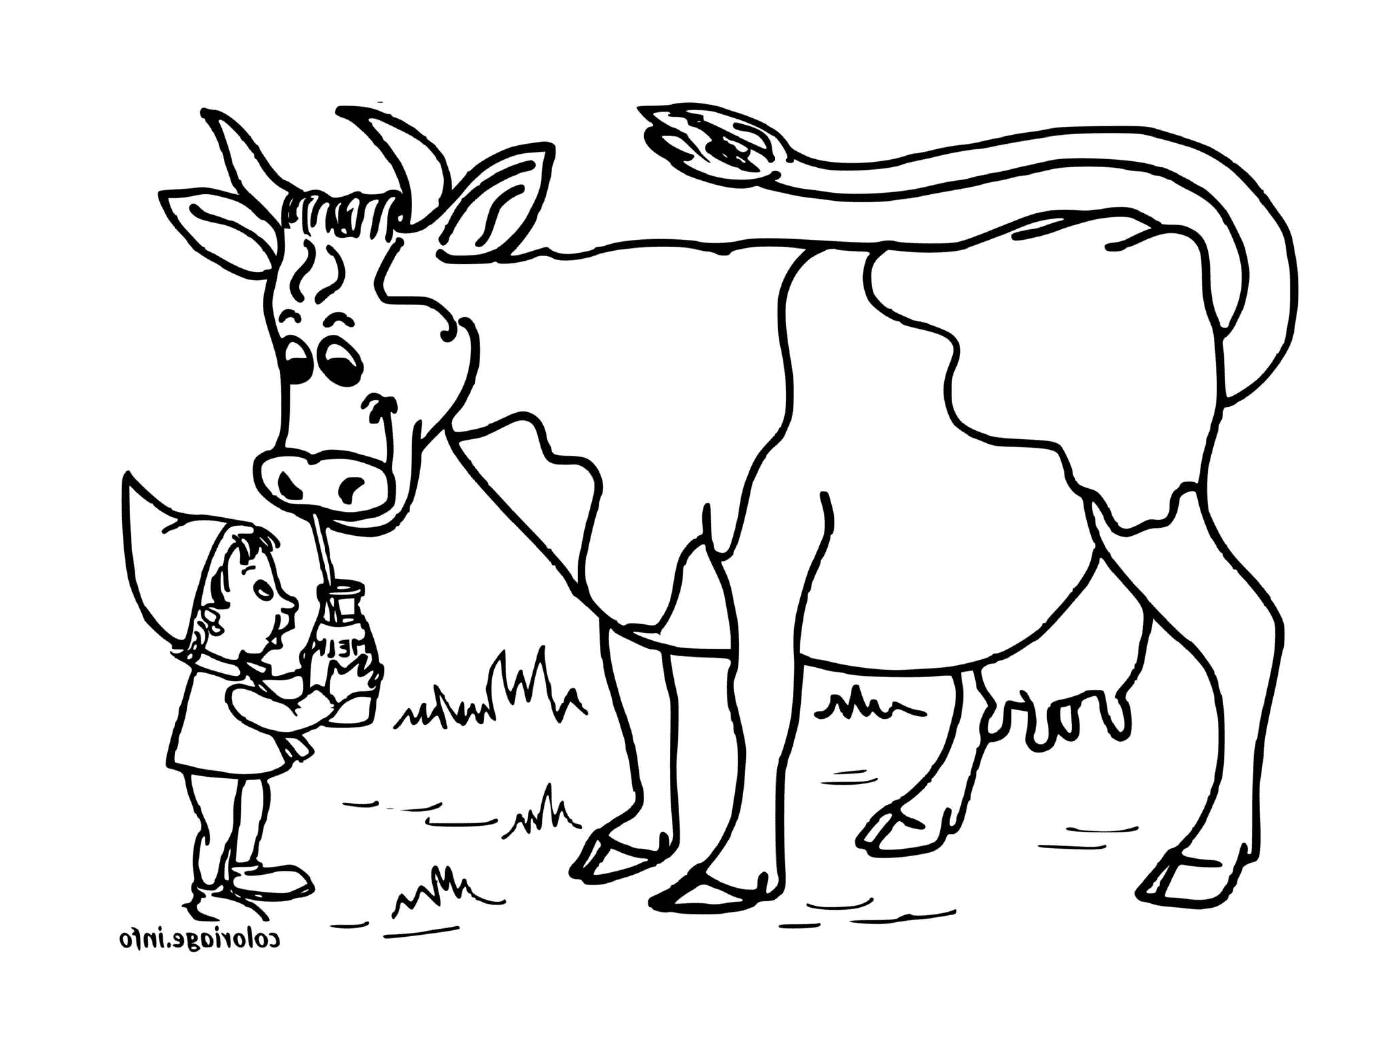  Milk-drinking cow 